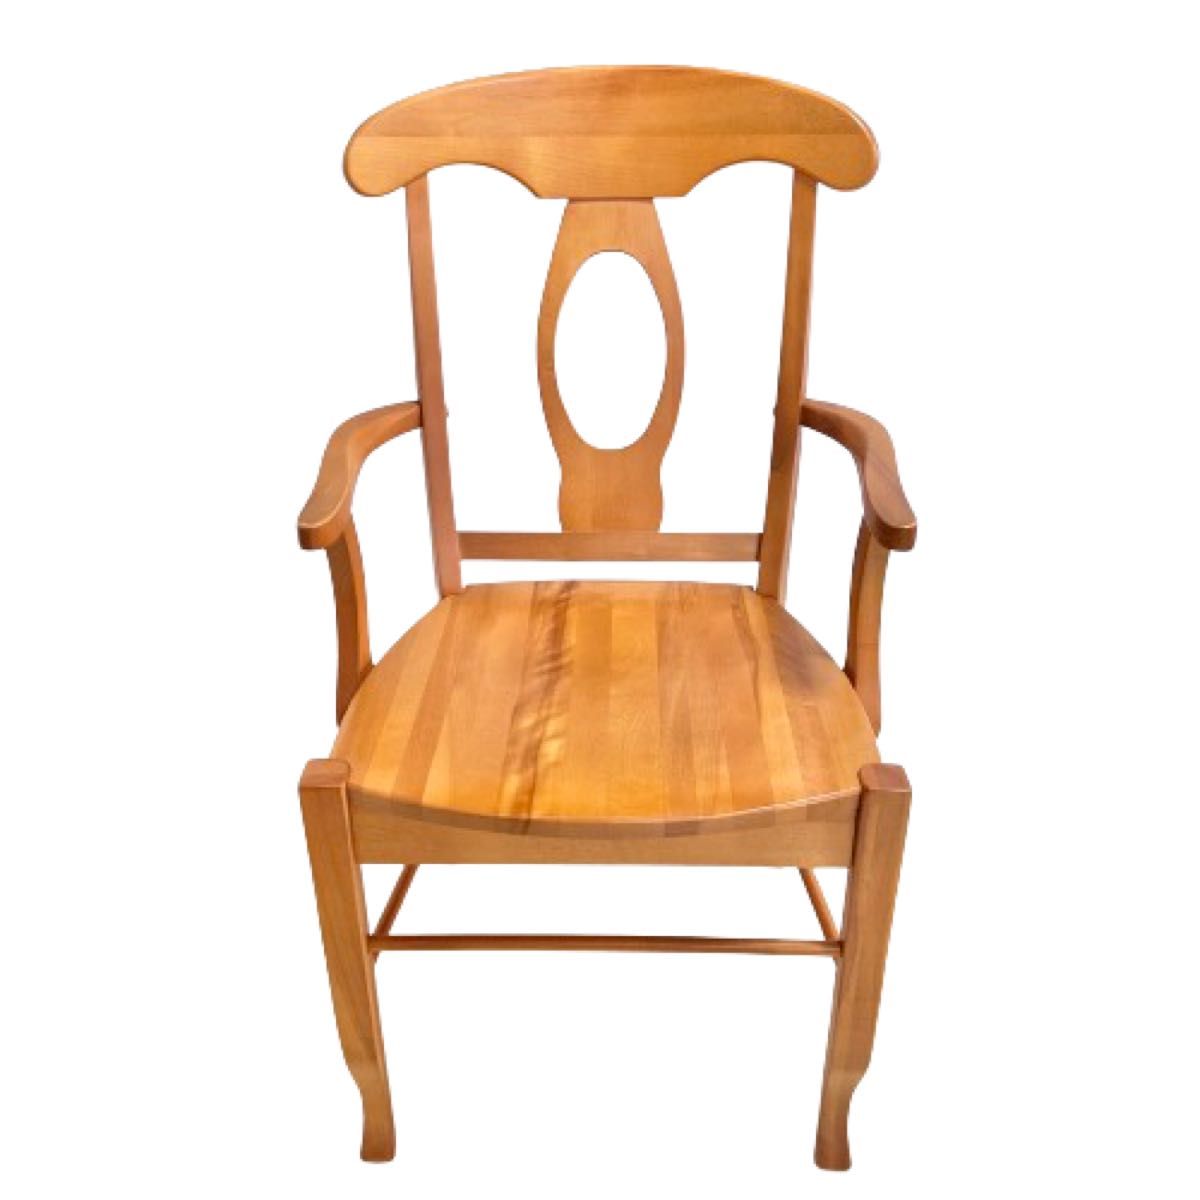 ダイニングチェア アーム付き アームレストチェア 木製家具 椅子 イス